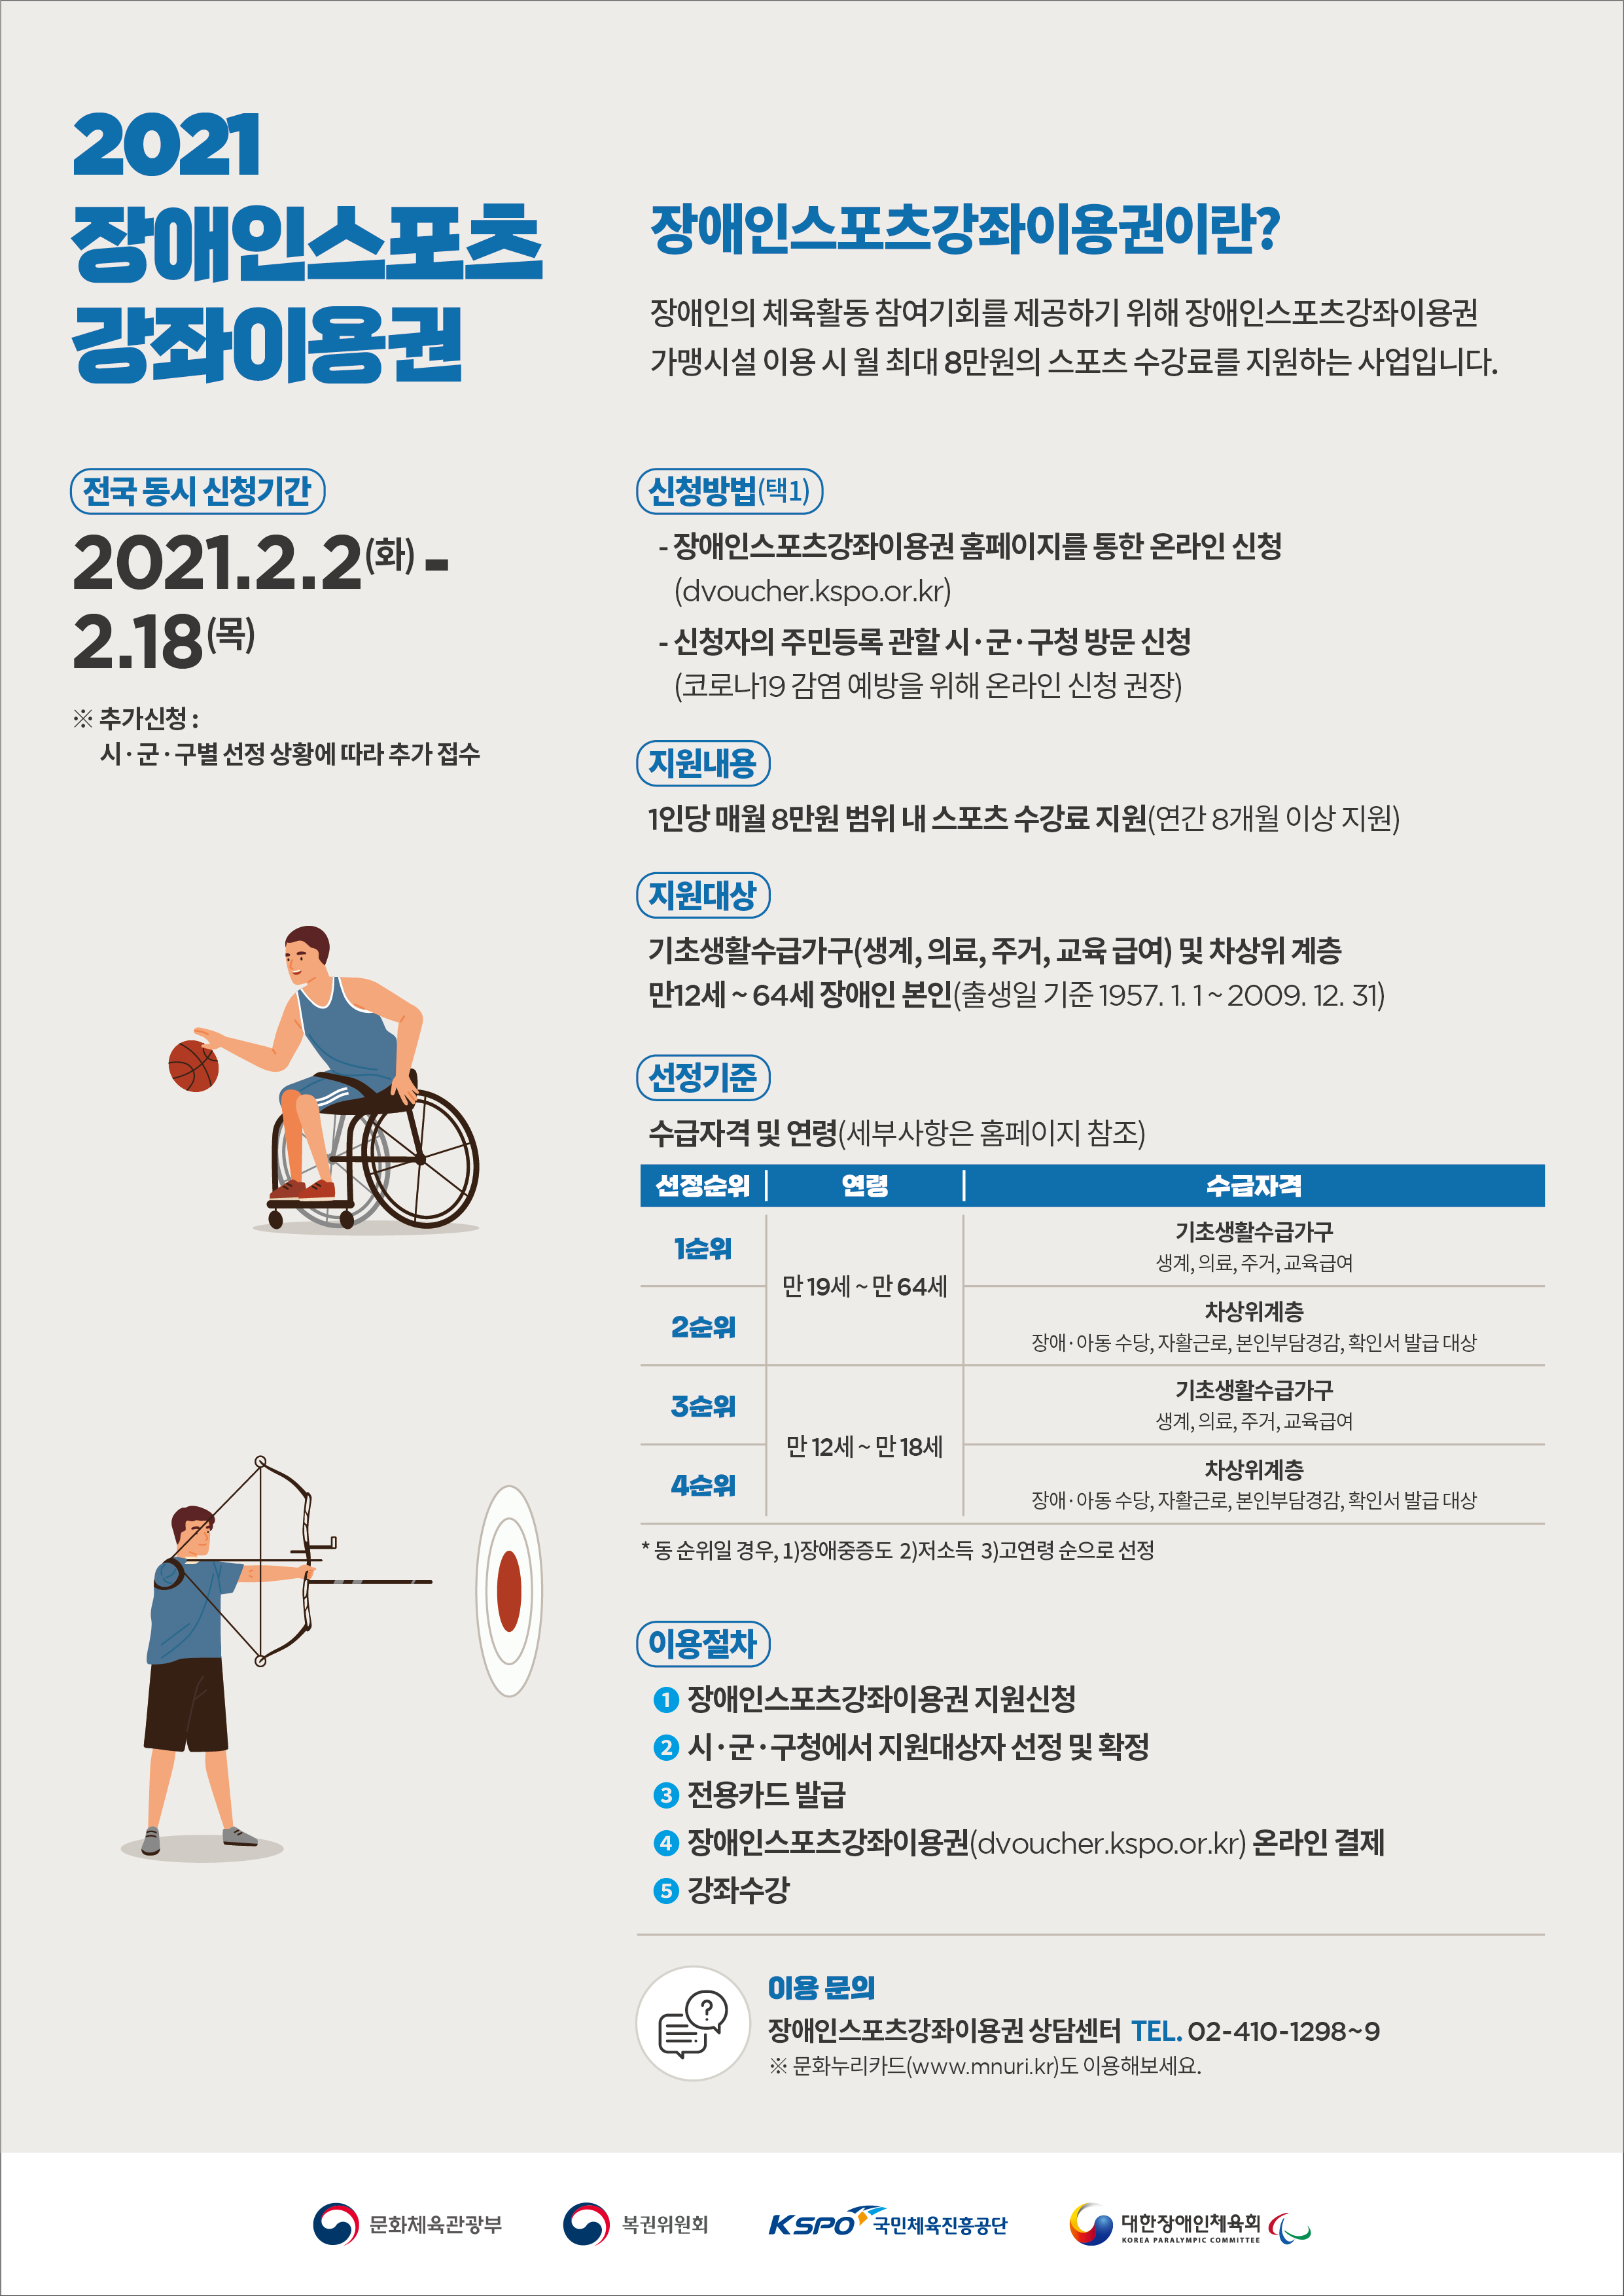 장애인스포츠강좌이용권 지원 사업 홍보